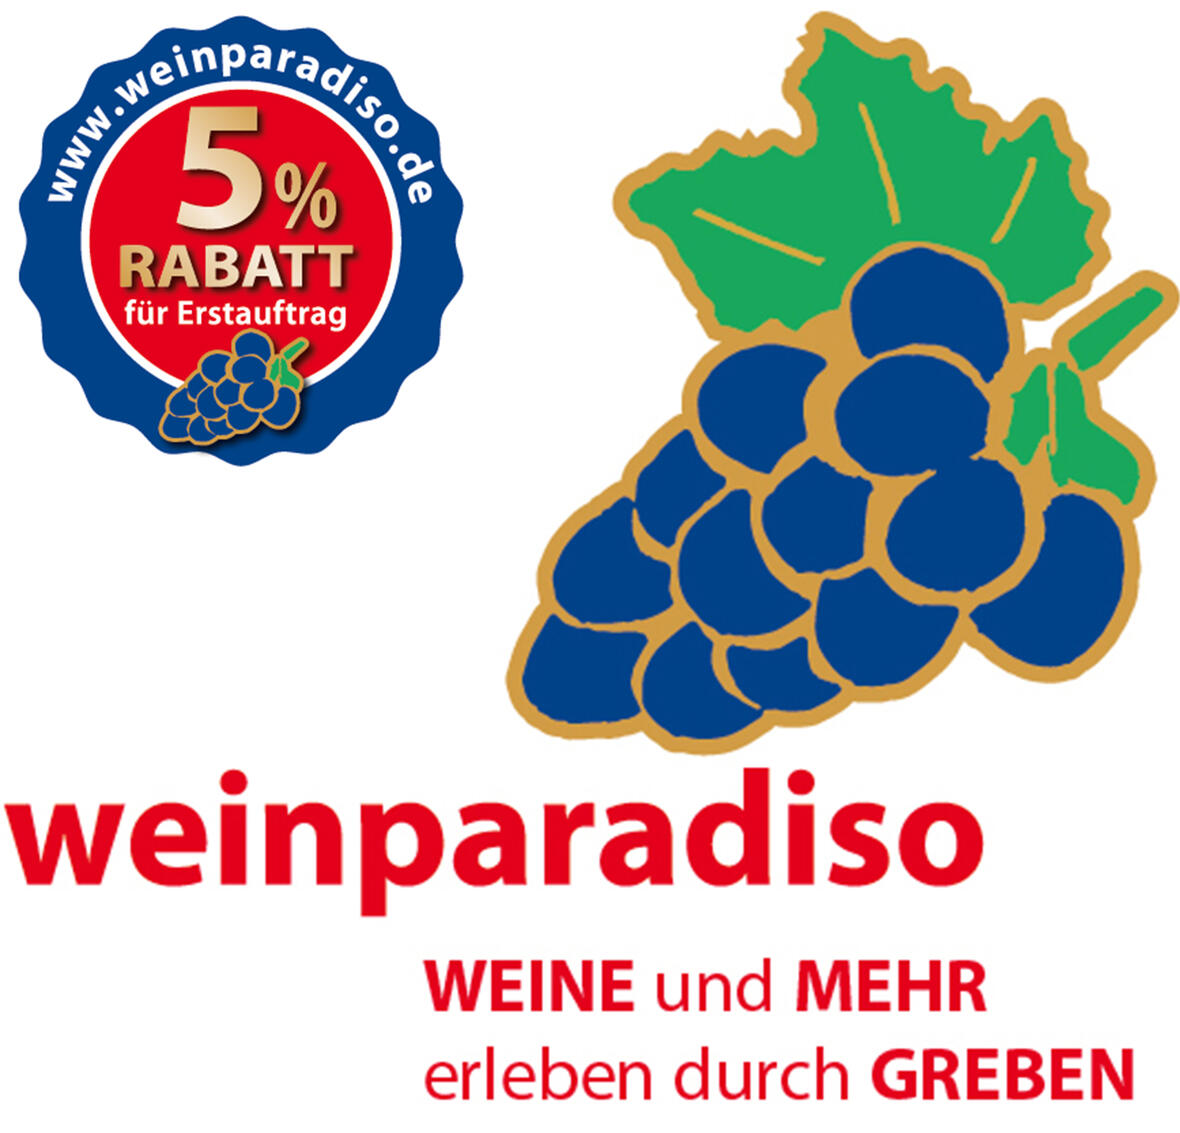 logo-weinparadiso-mit-5-siegel